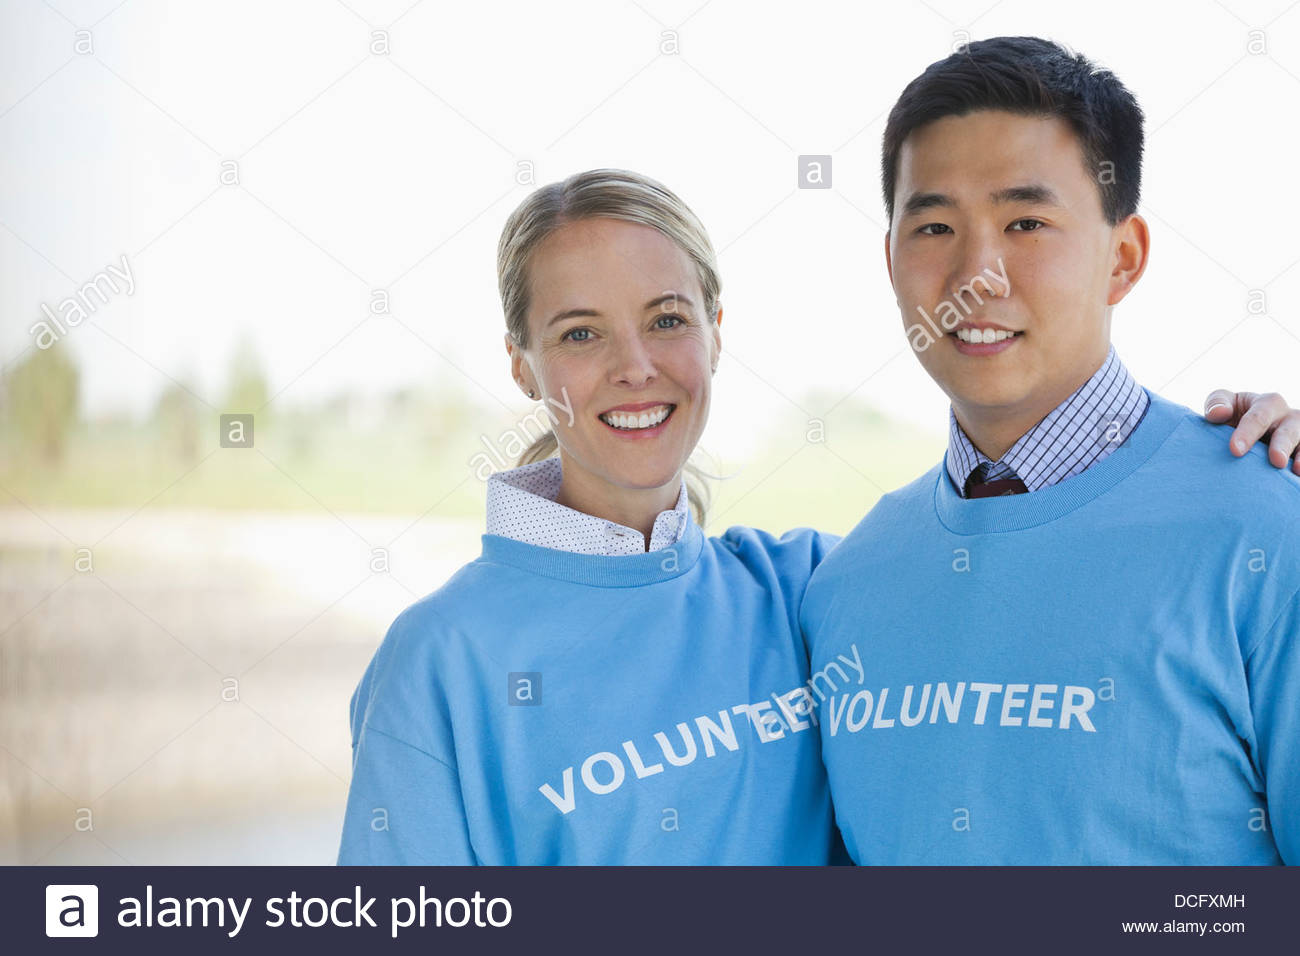 Los voluntarios juntos Foto de stock